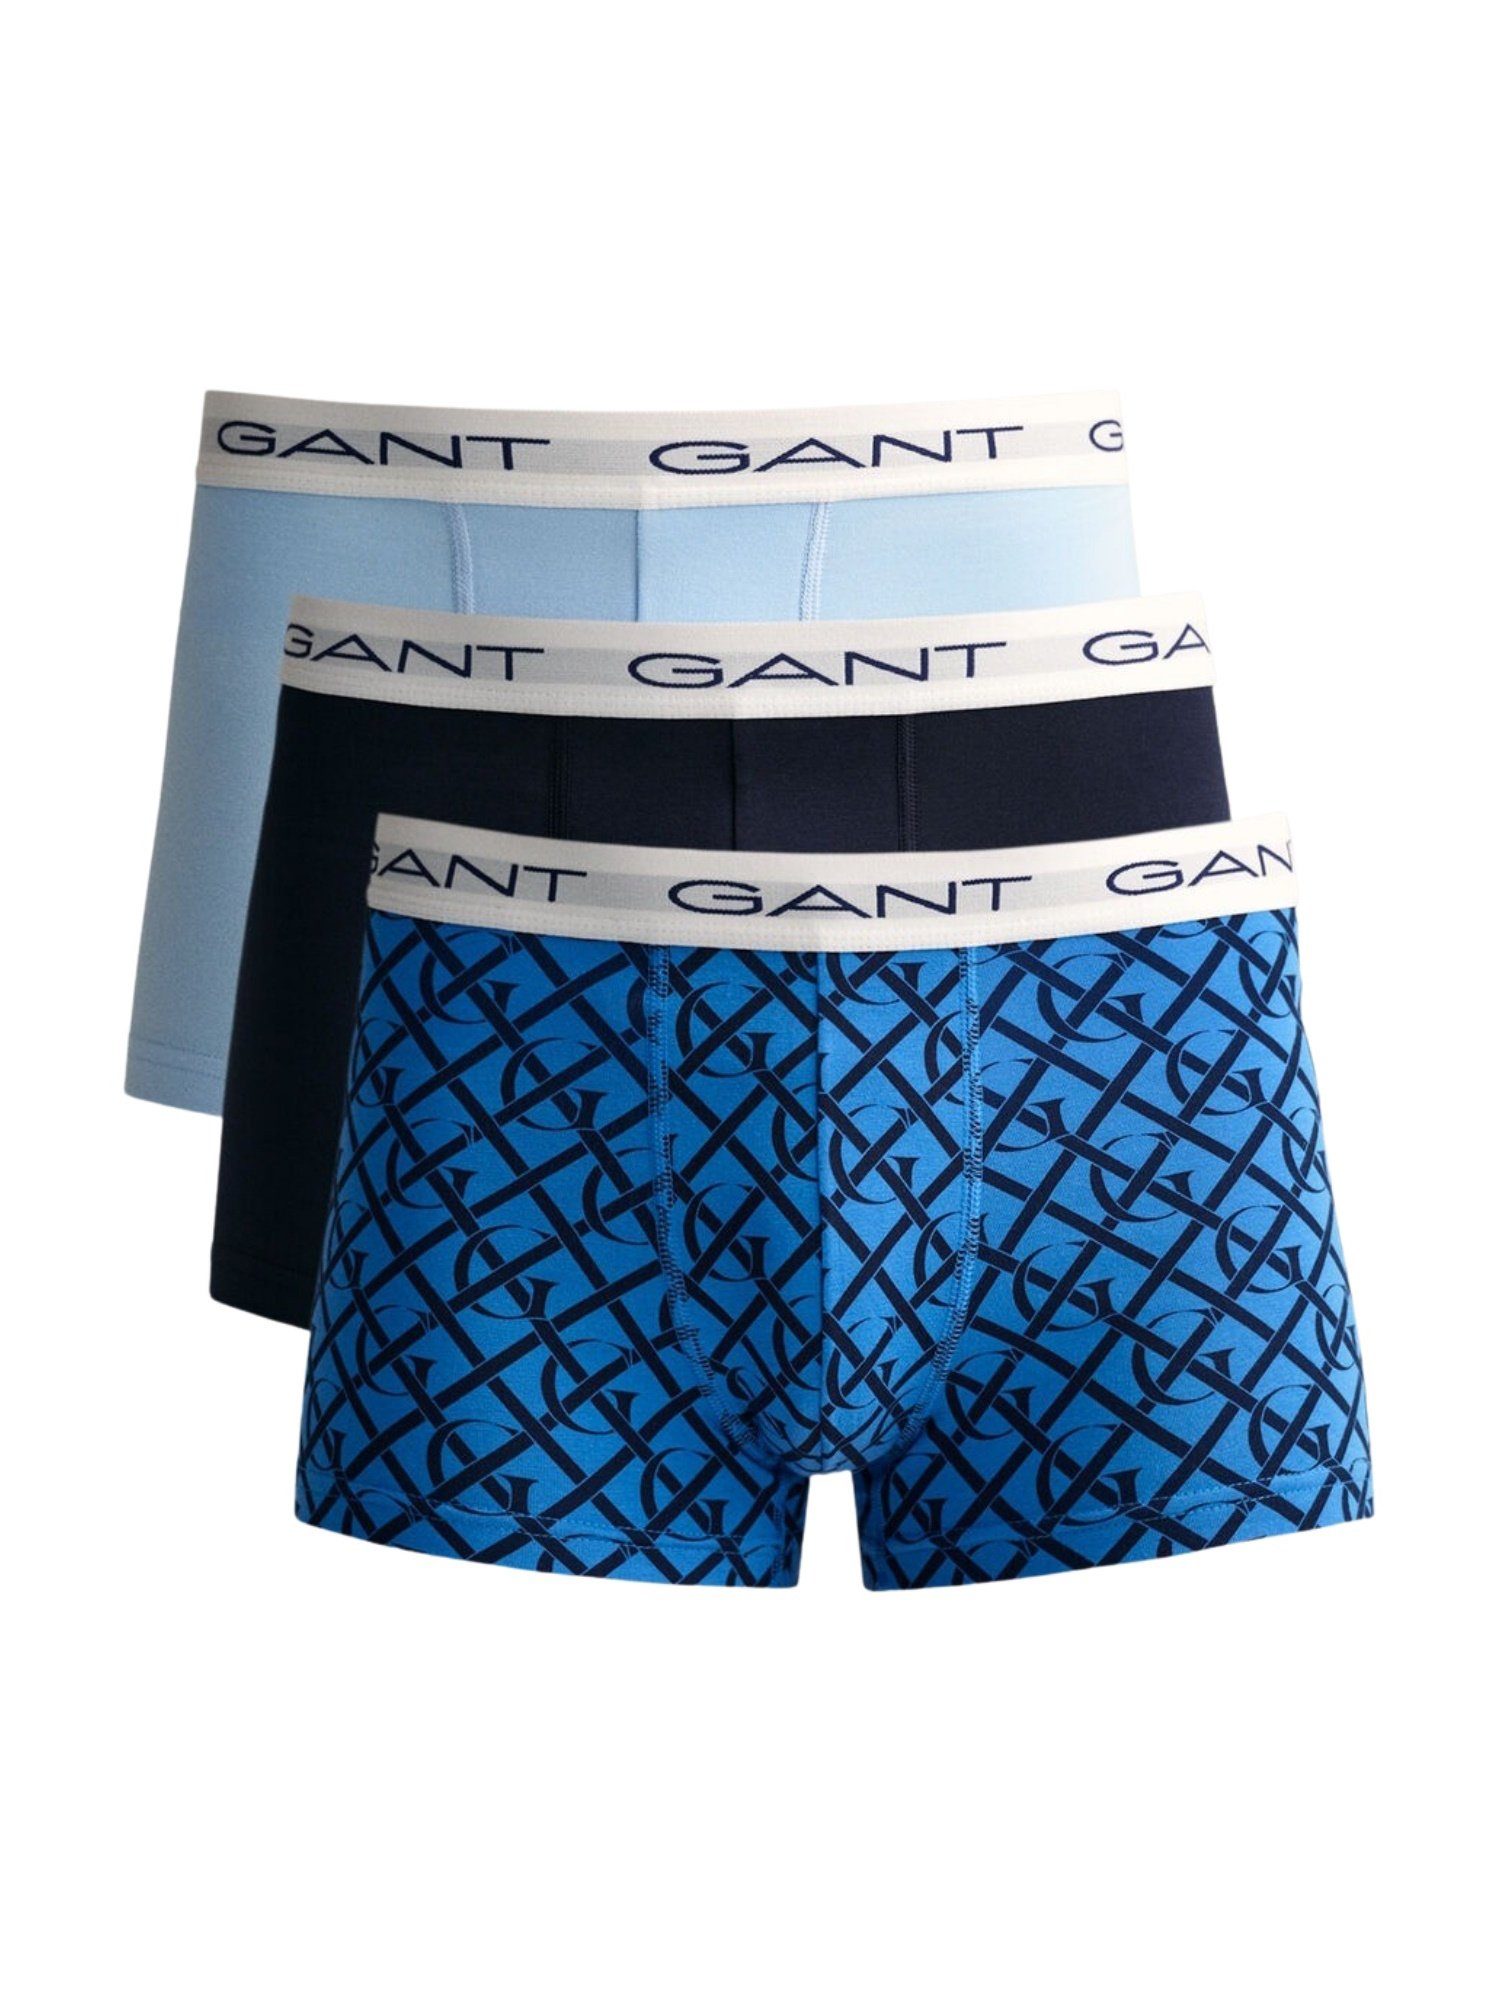 Gant Boxershorts Unterhose MONOGRAM TRUNK 3er Pack PRINT G